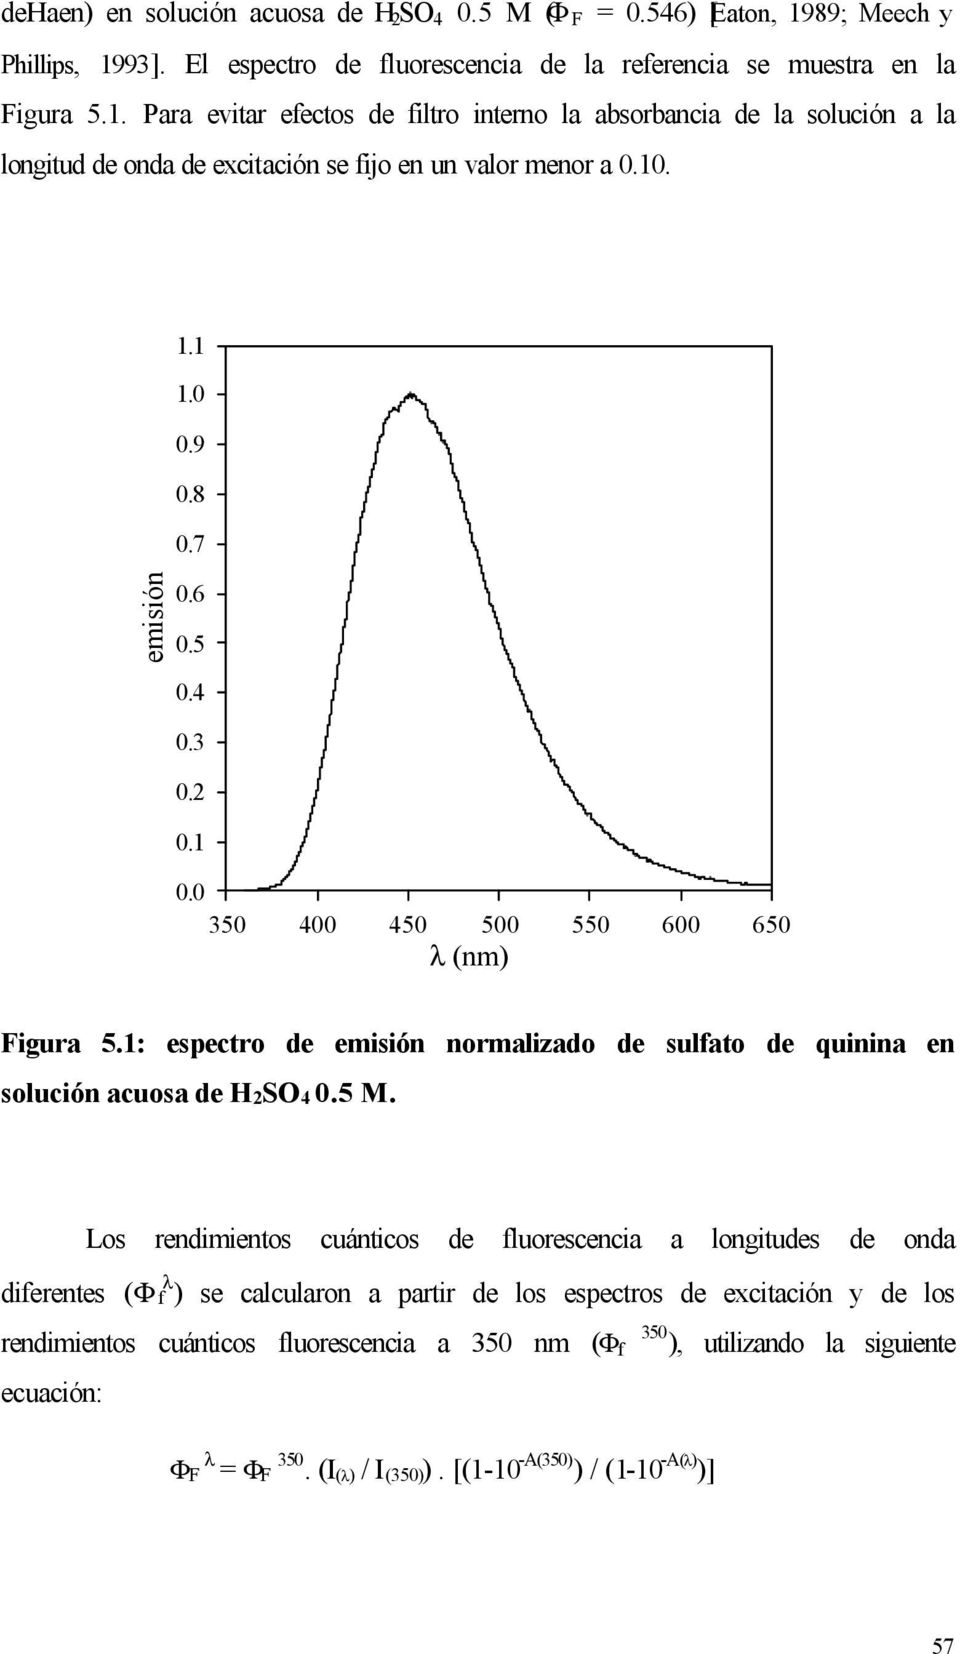 10. 1.1 1.0 0.9 0.8 0.7 emisión 0.6 0.5 0.4 0.3 0.2 0.1 0.0 350 400 450 500 550 600 650 λ (nm) Figura 5.1: espectro de emisión normalizado de sulfato de quinina en solución acuosa de H2SO4 0.5 M.